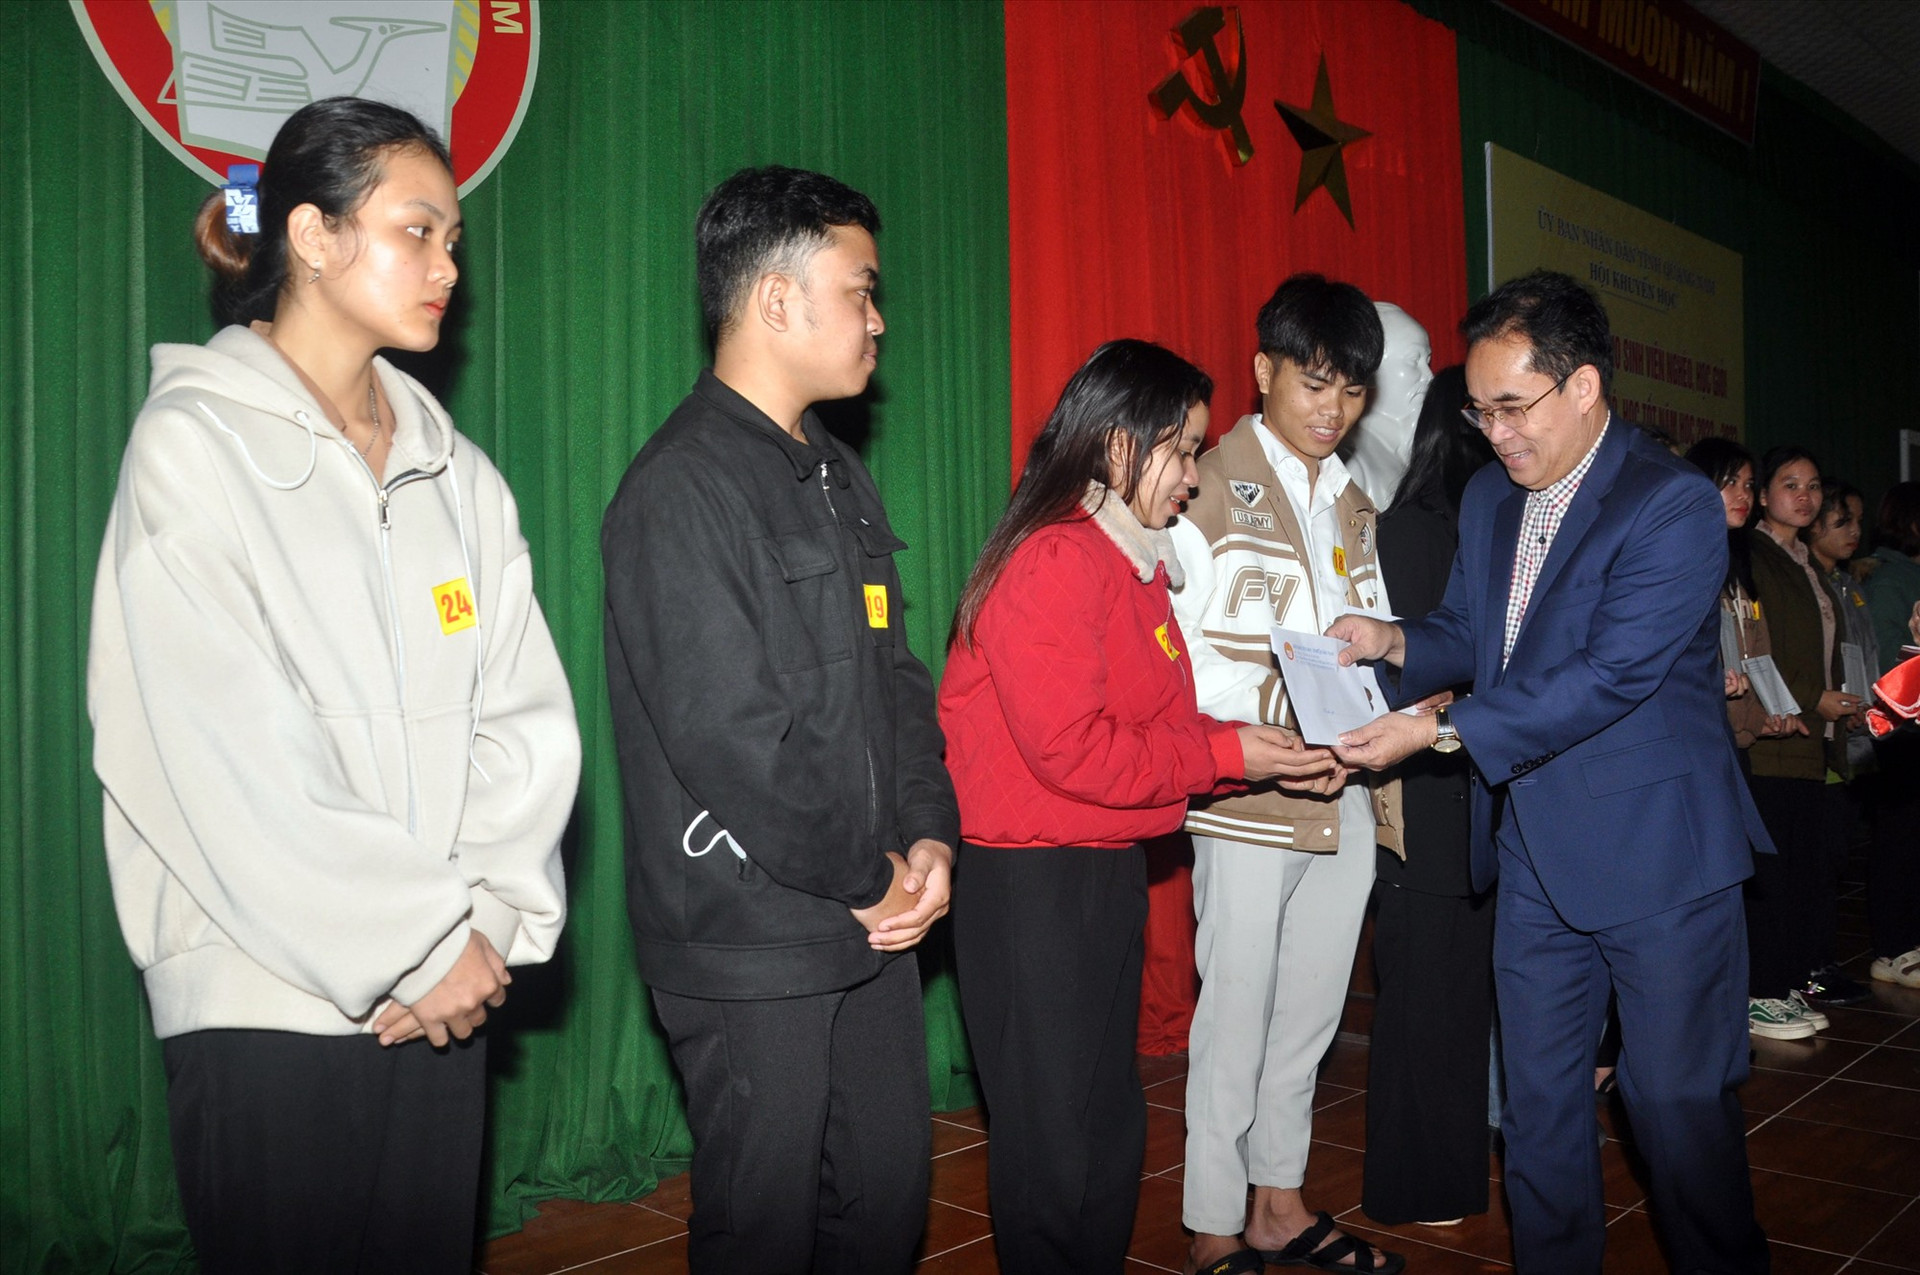 Phó Chủ tịch UBND tỉnh Trần Anh Tuấn trao học bổng cho sinh viên. Ảnh: X.P